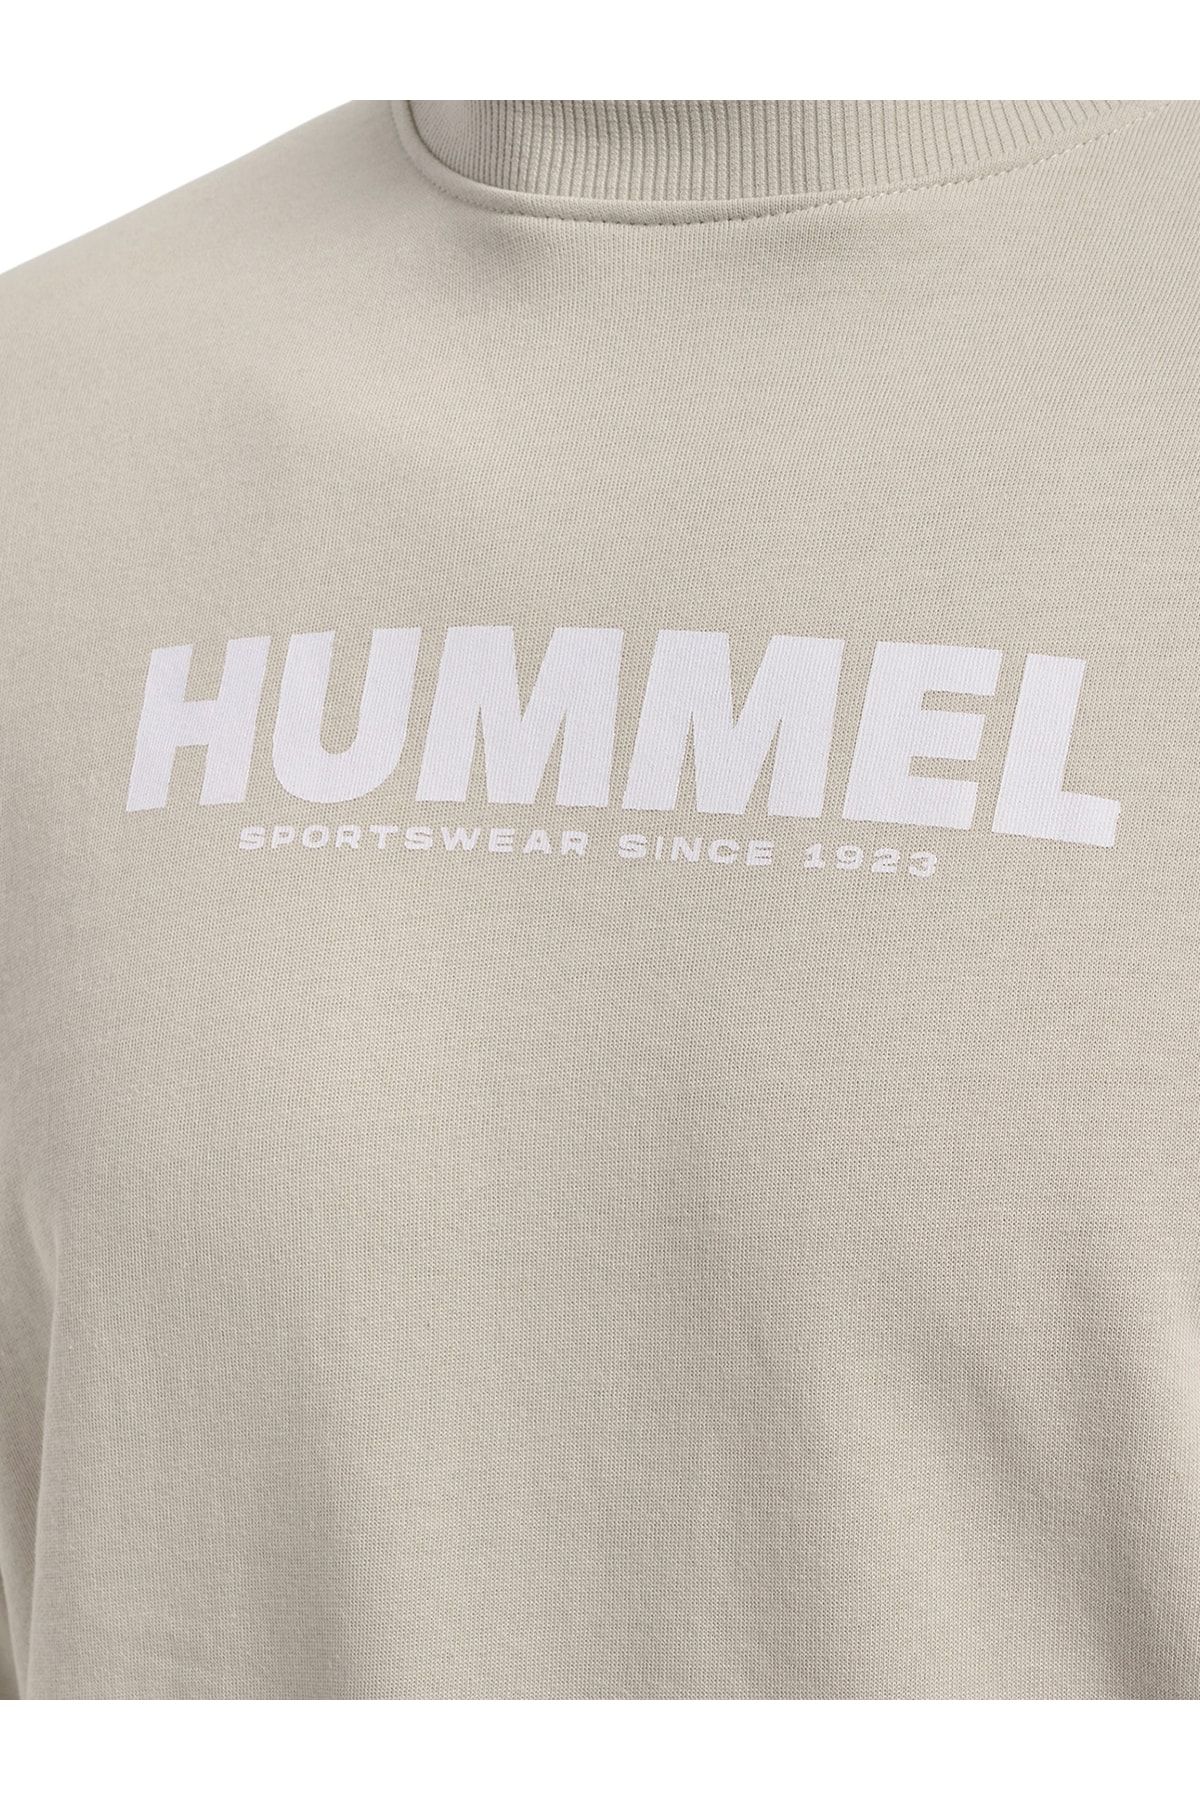 HUMMEL Sweatshirt Beige Regular Fit